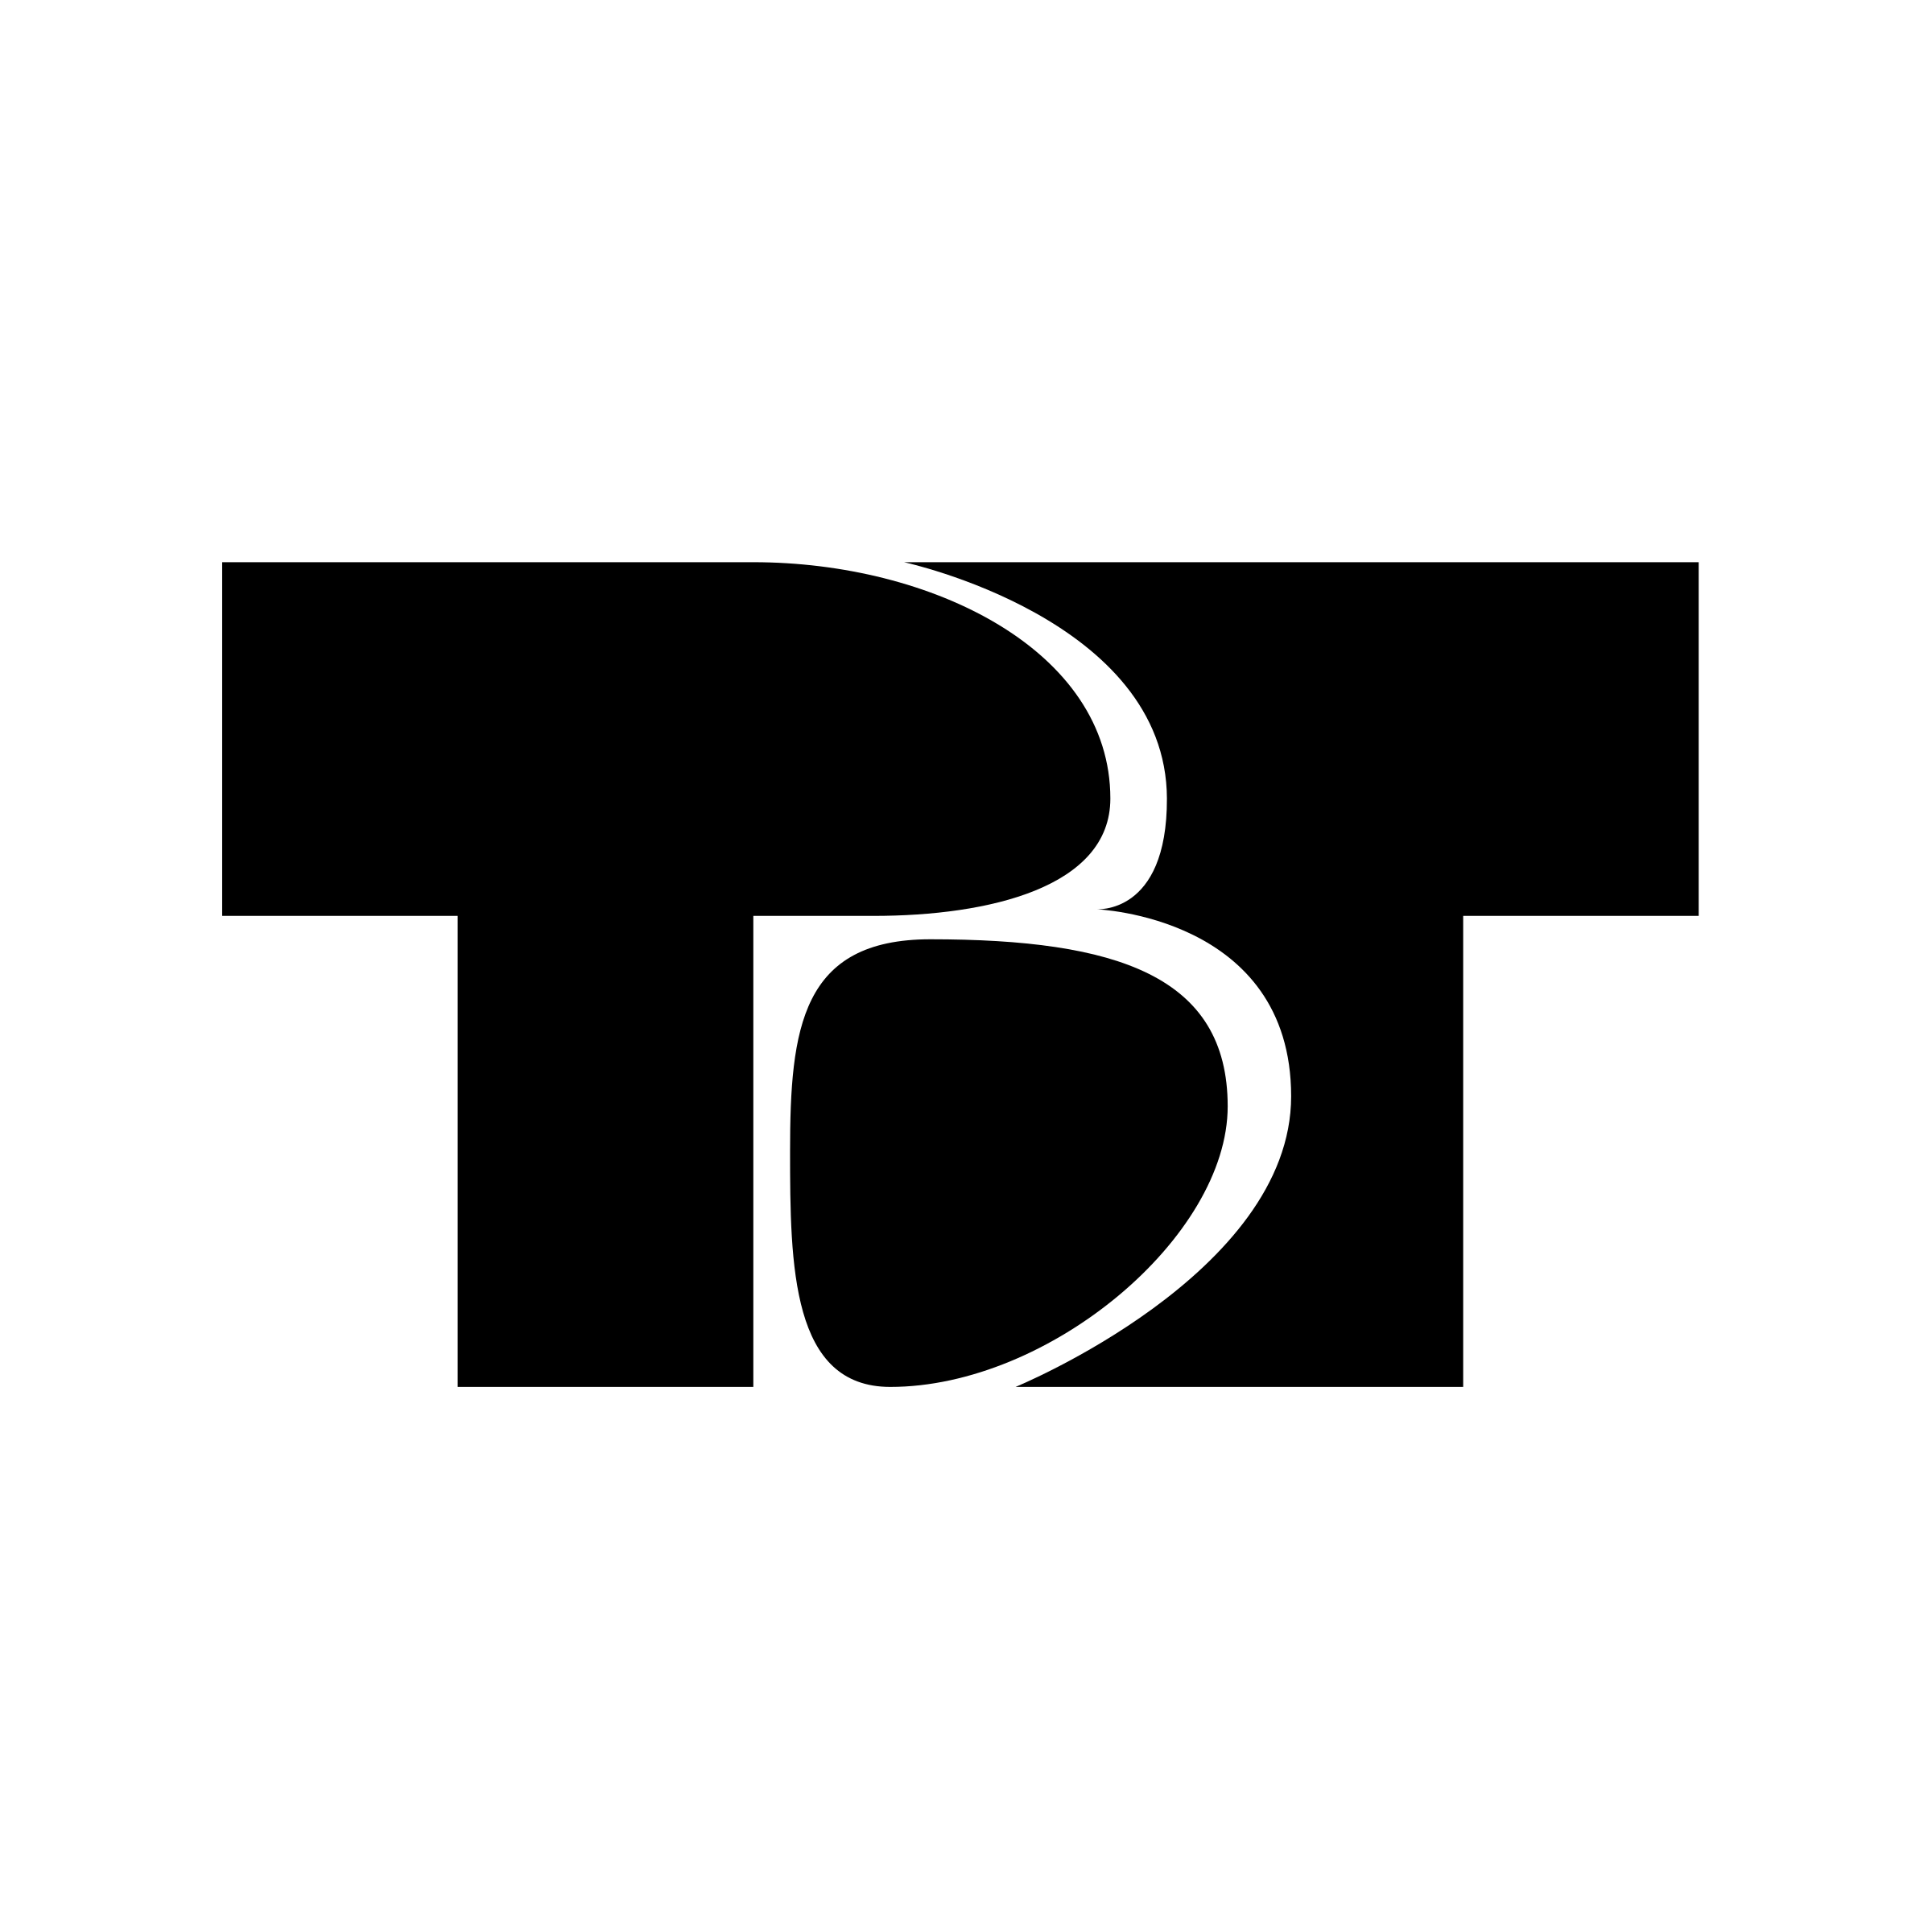 TVT Logo - TVT Logo PNG Transparent & SVG Vector - Freebie Supply